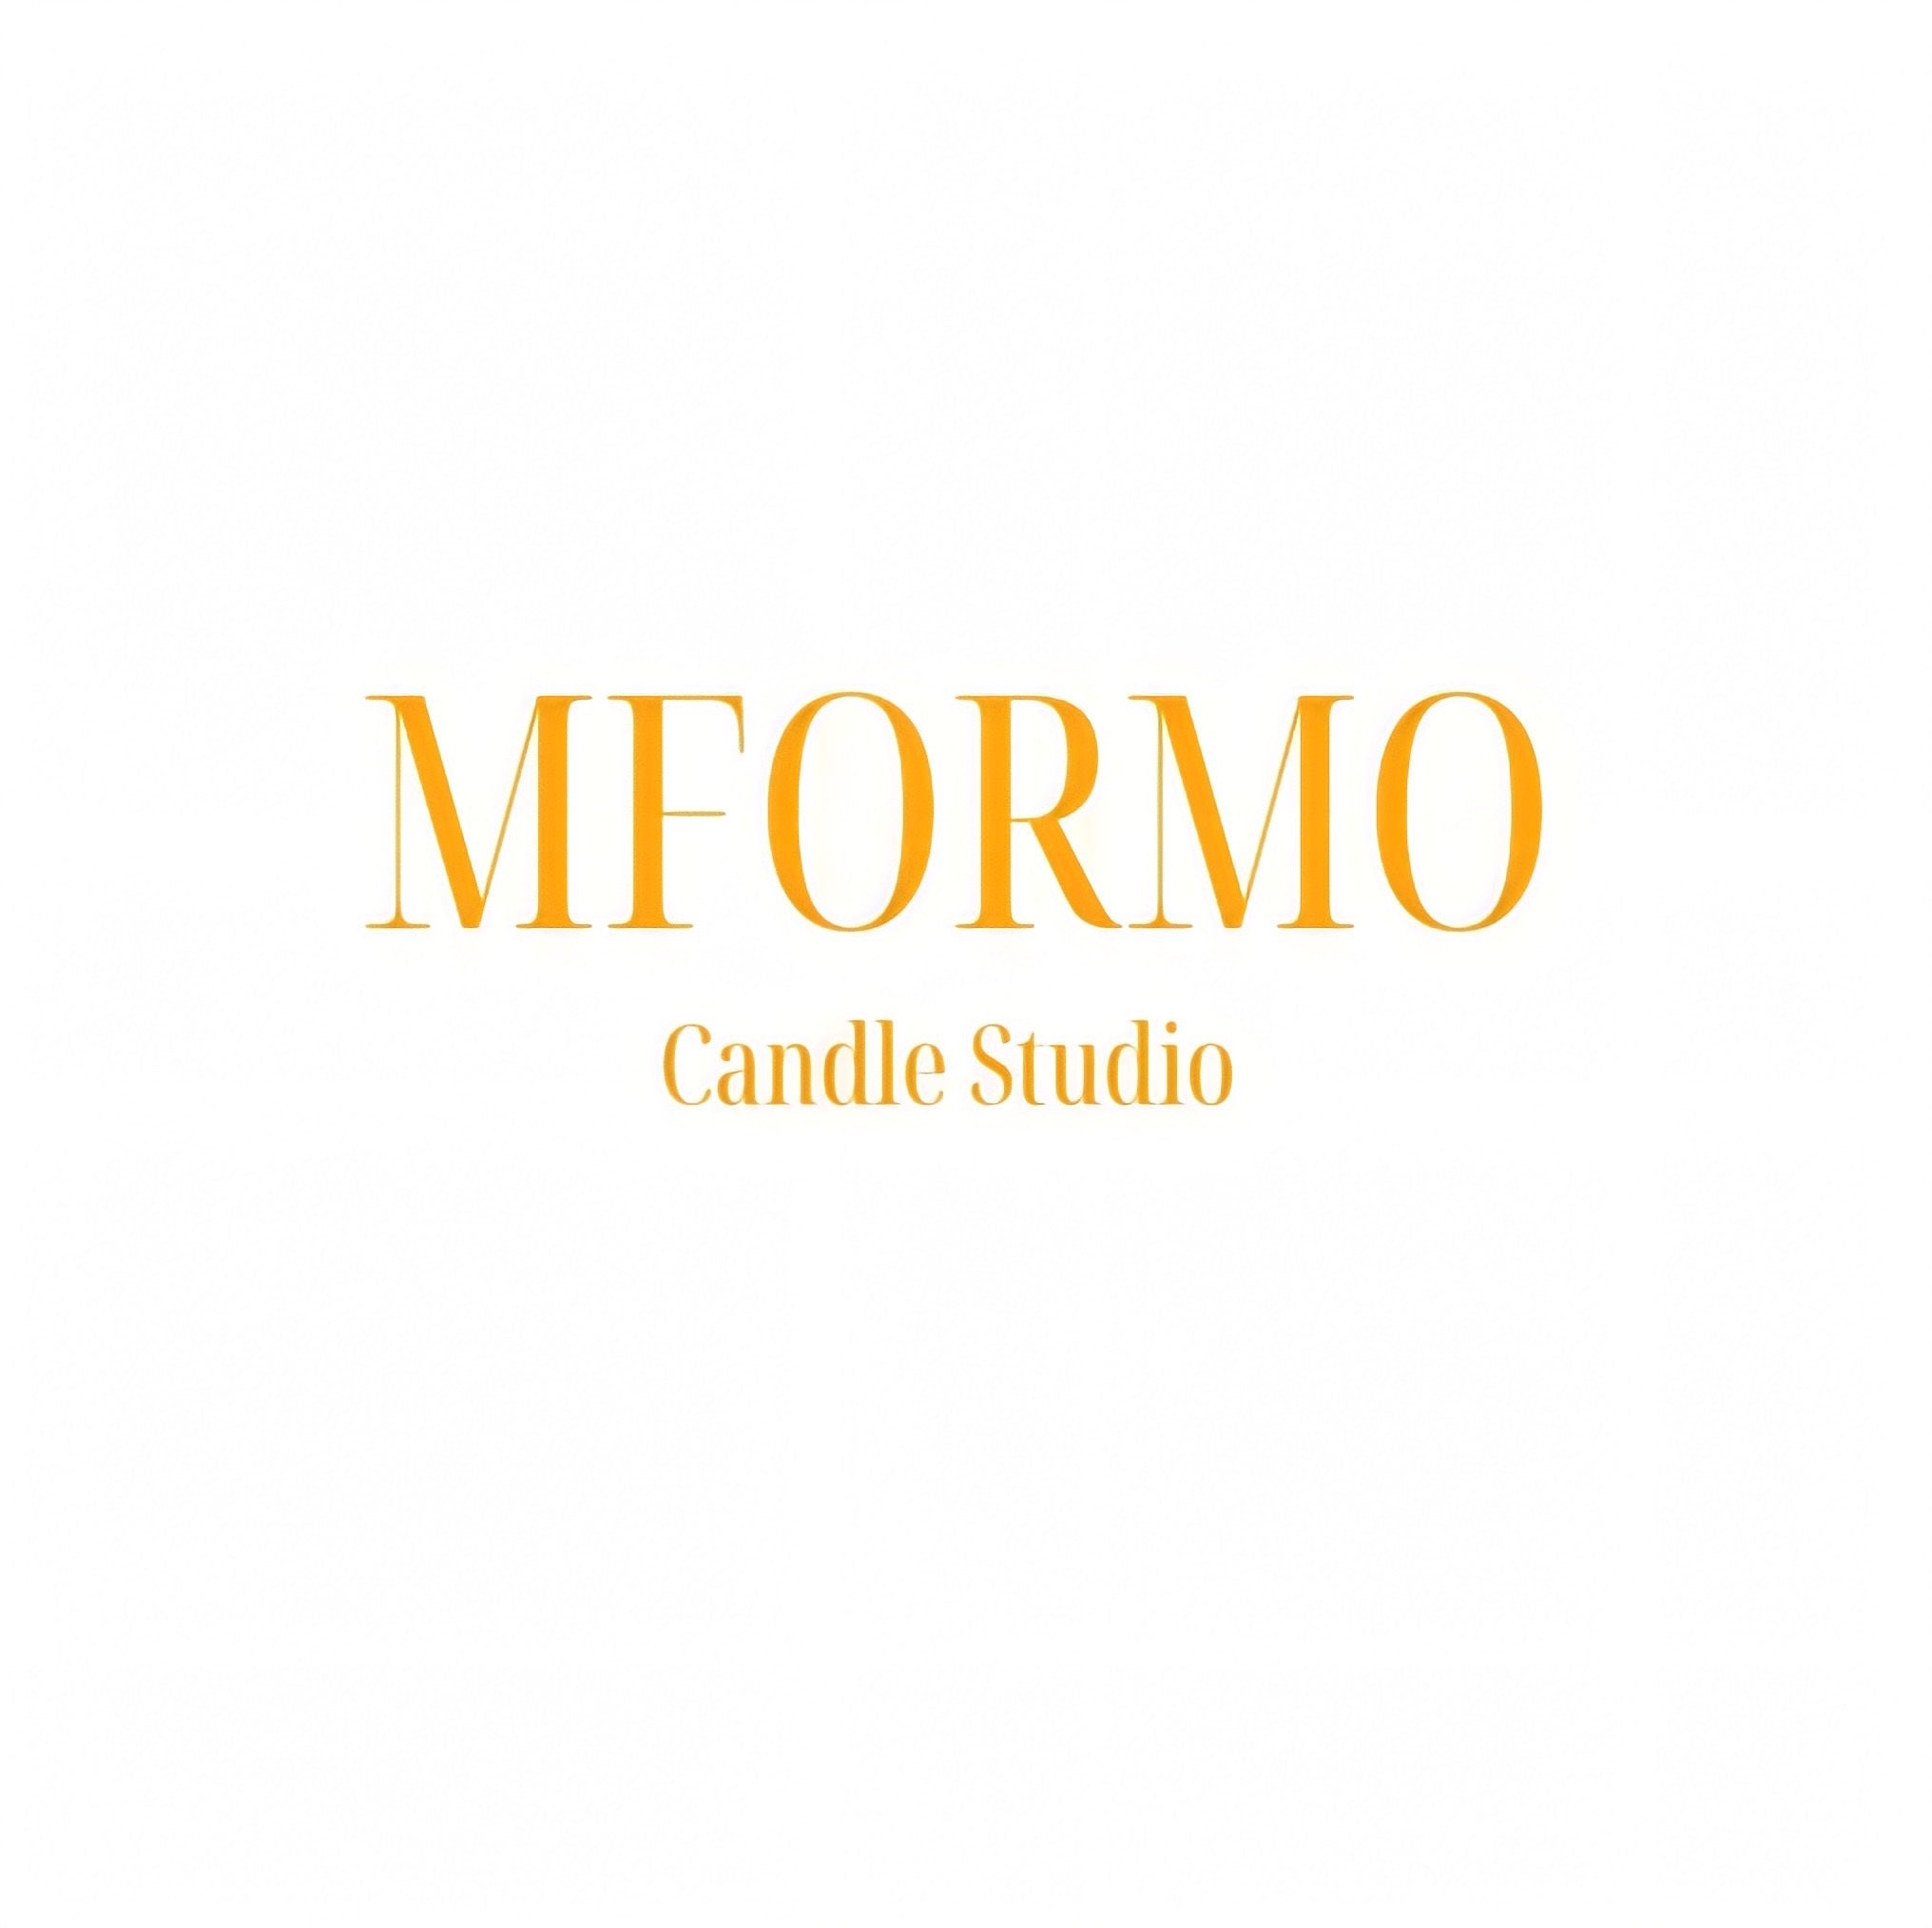 MFORMO Candle Studio